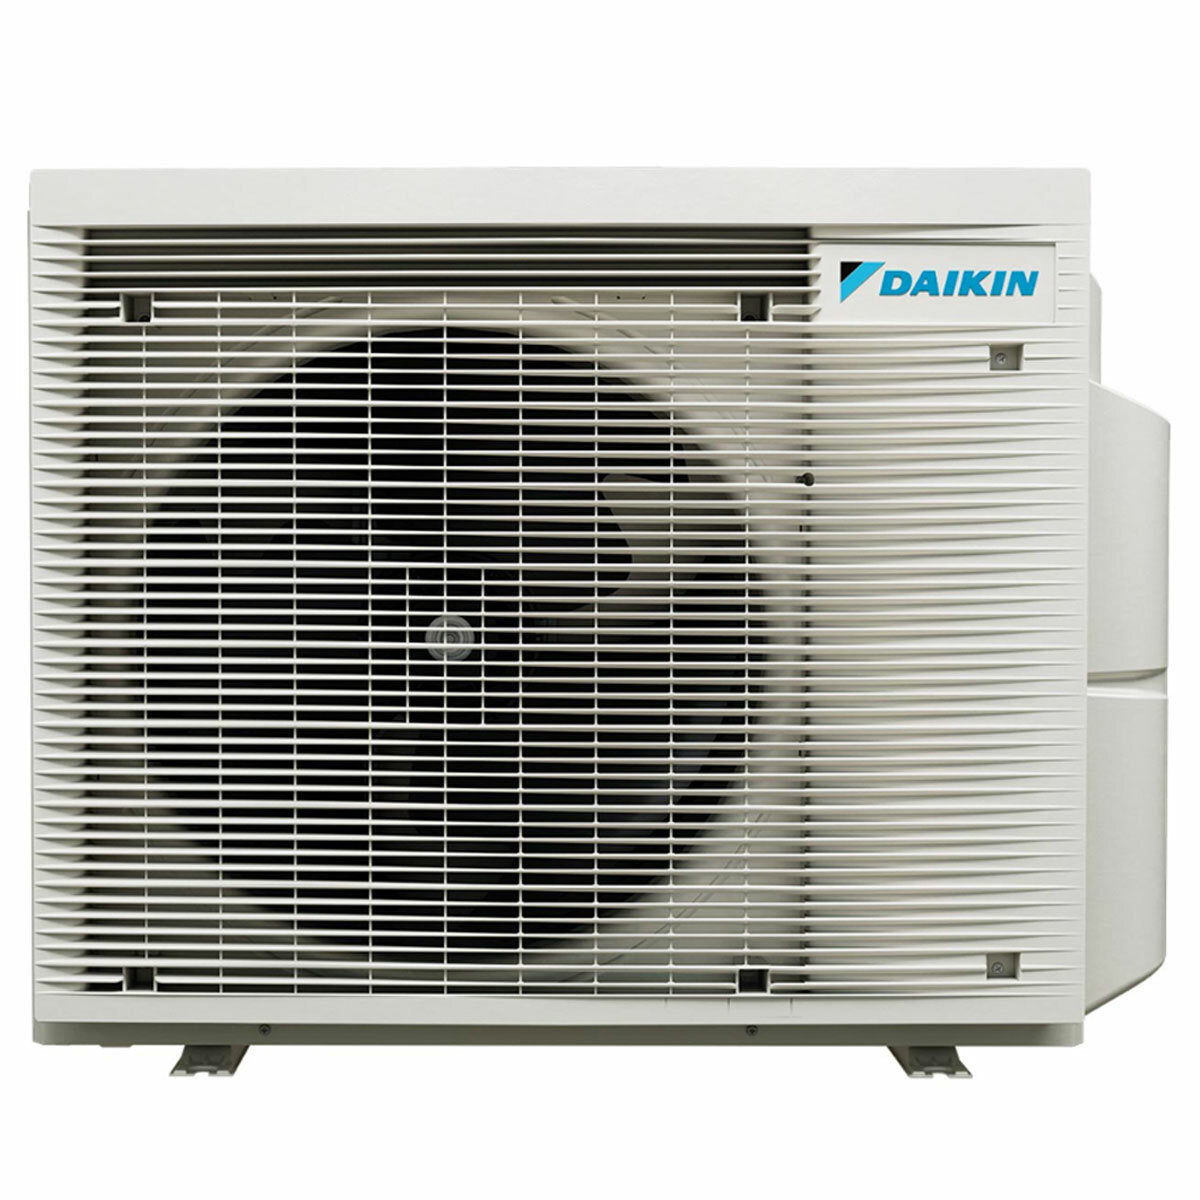 Daikin Emura 3 trial split air conditioner 7000+7000+18000 BTU inverter A+ wifi outdoor unit 6.8 kW Black